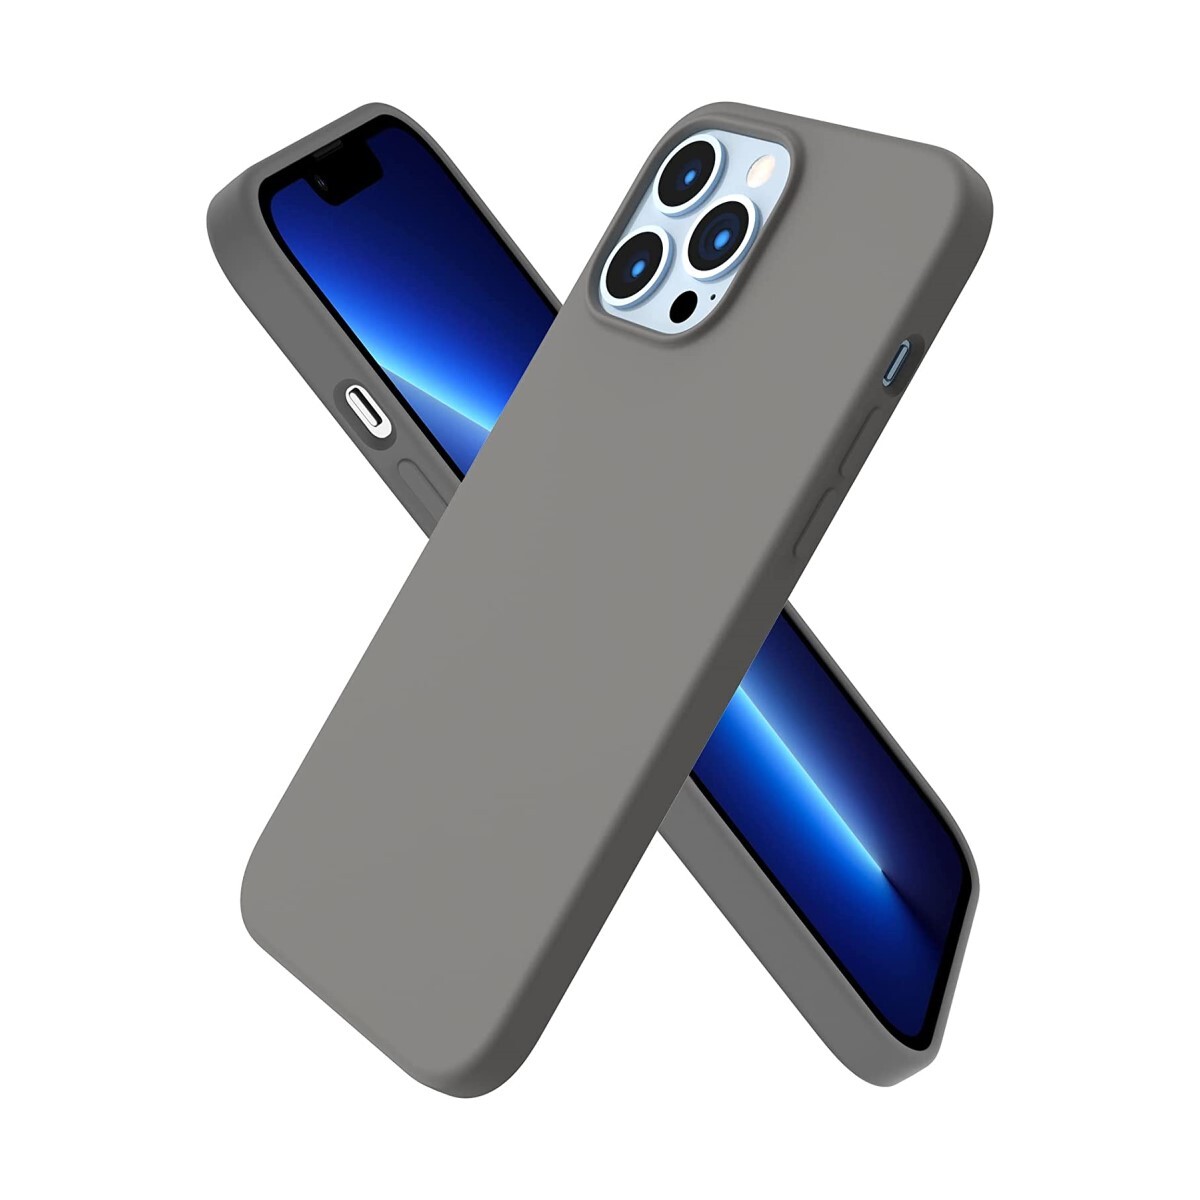 Protector case de silicona para iphone 13 pro max - Gris oscuro 